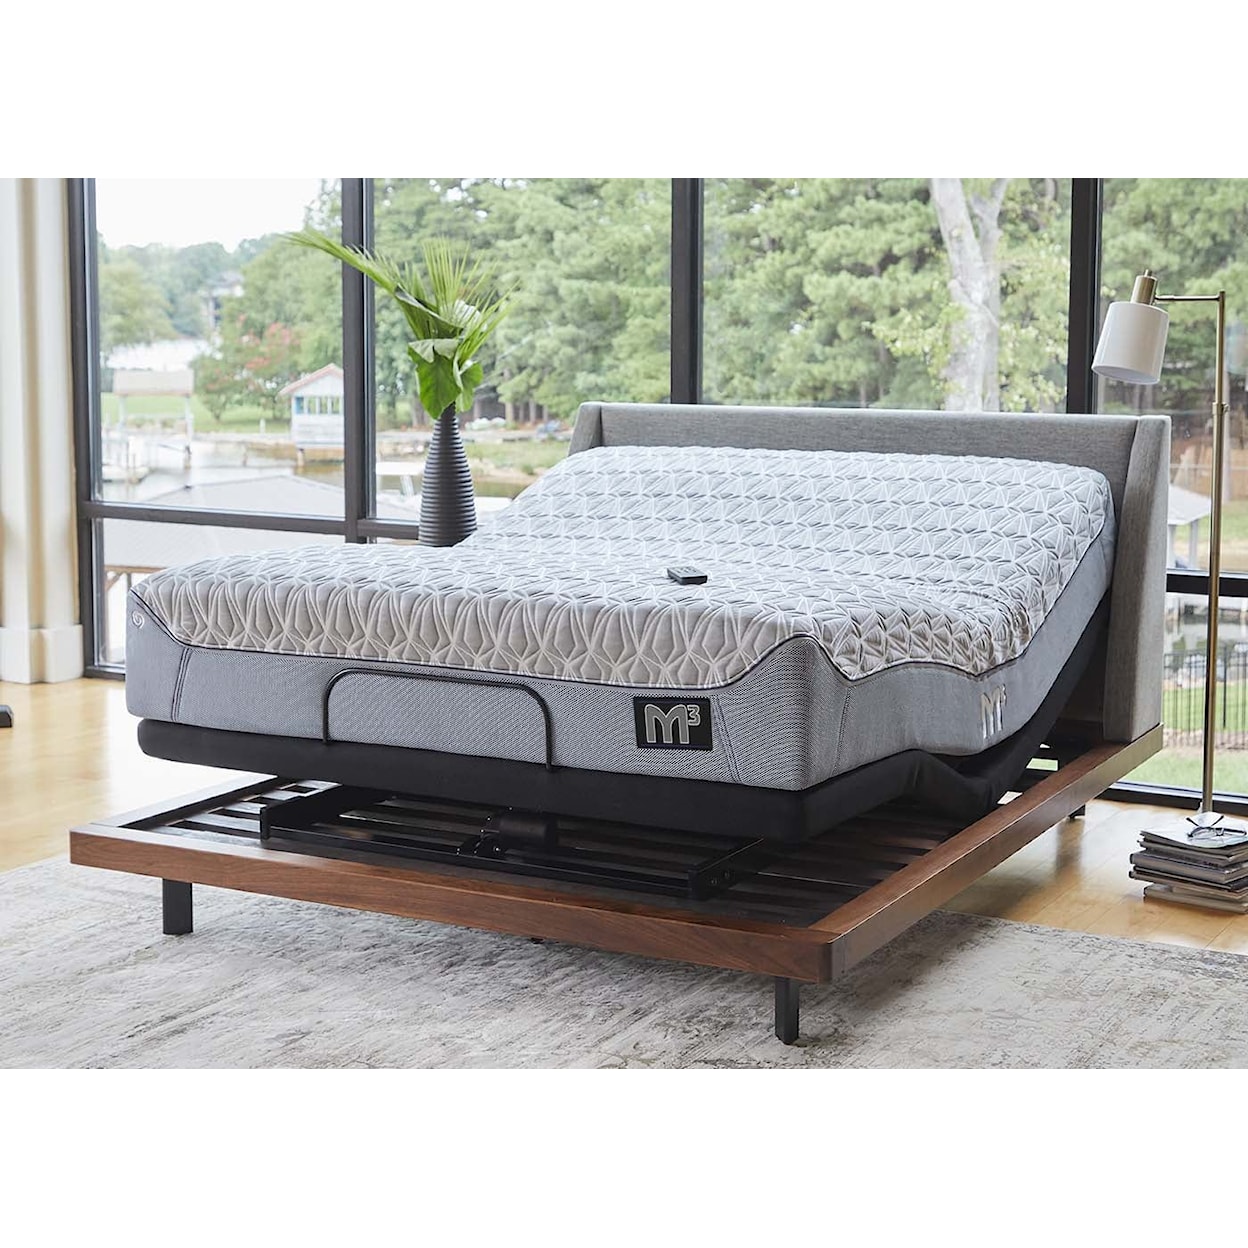 Bedgear Adjustable Base Smart Bed Frame Power Base Smart Bed Frame-King